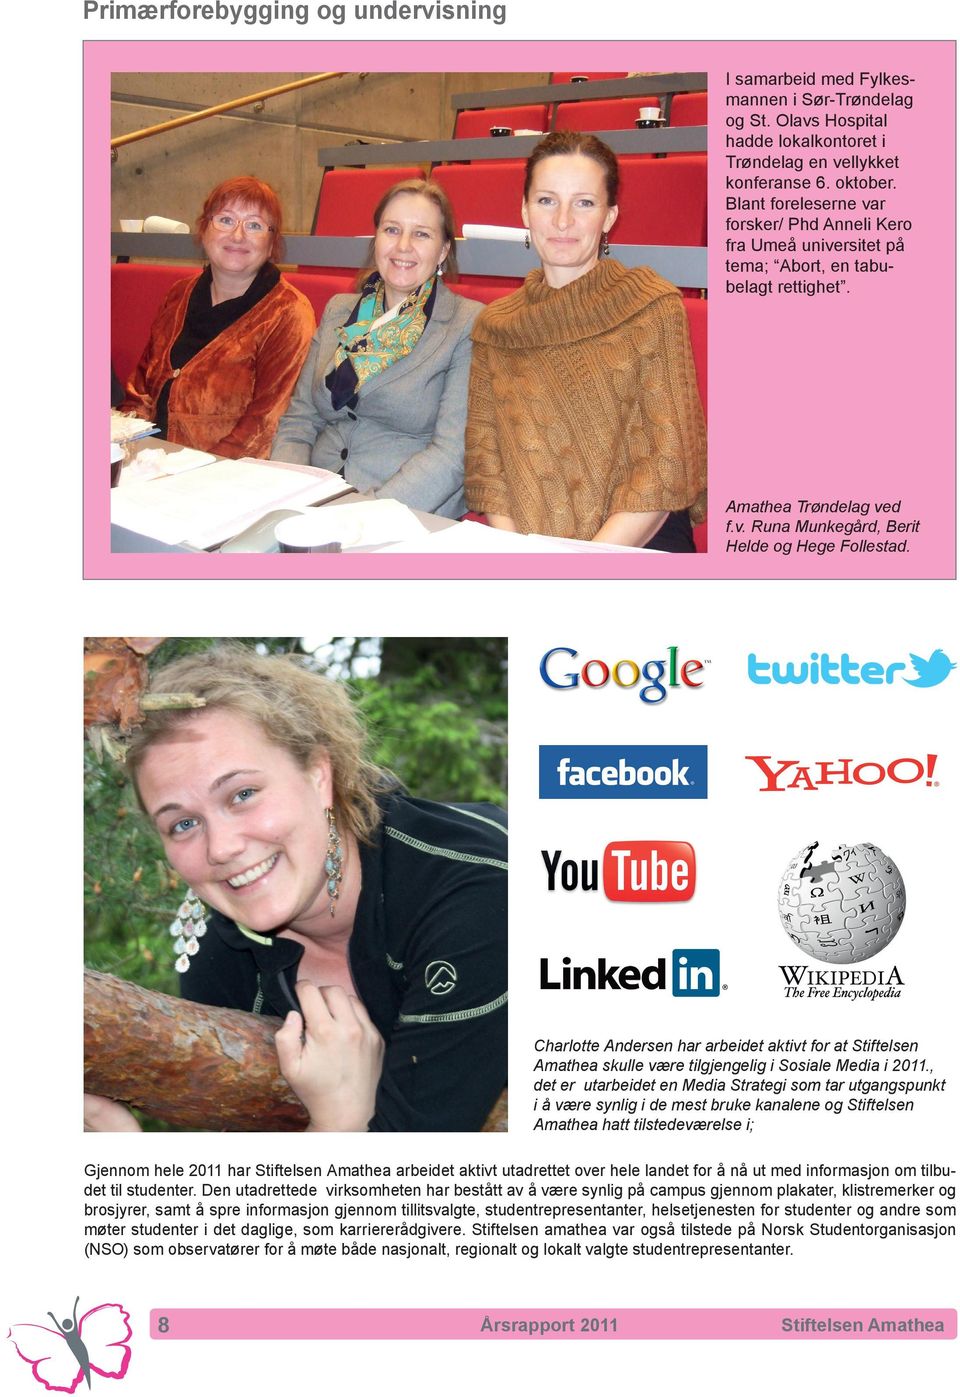 Charlotte Andersen har arbeidet aktivt for at Stiftelsen Amathea skulle være tilgjengelig i Sosiale Media i 2011.